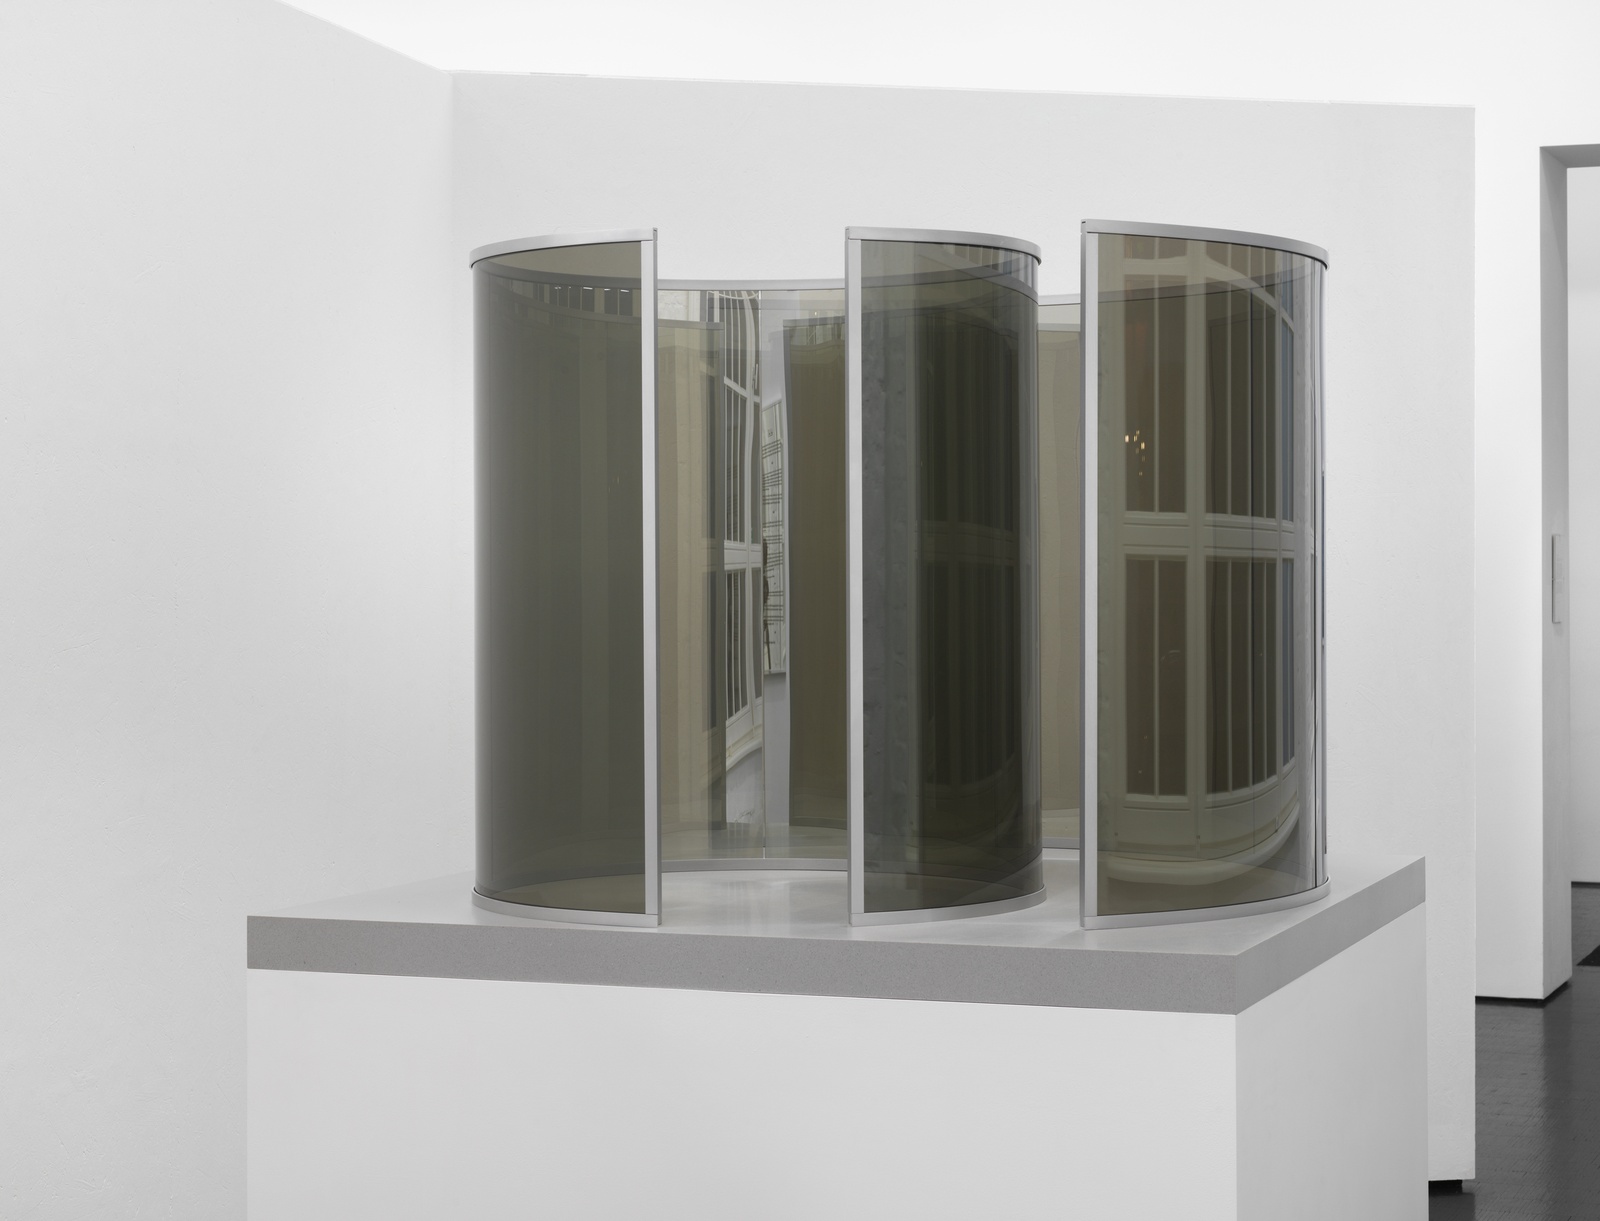 Dan GrahamWhirligig (Round and Around), 2019two-way mirror glass, aluminium, wood, acrylic92 x 125 x 125 cm | 36 x 49 x 49 in